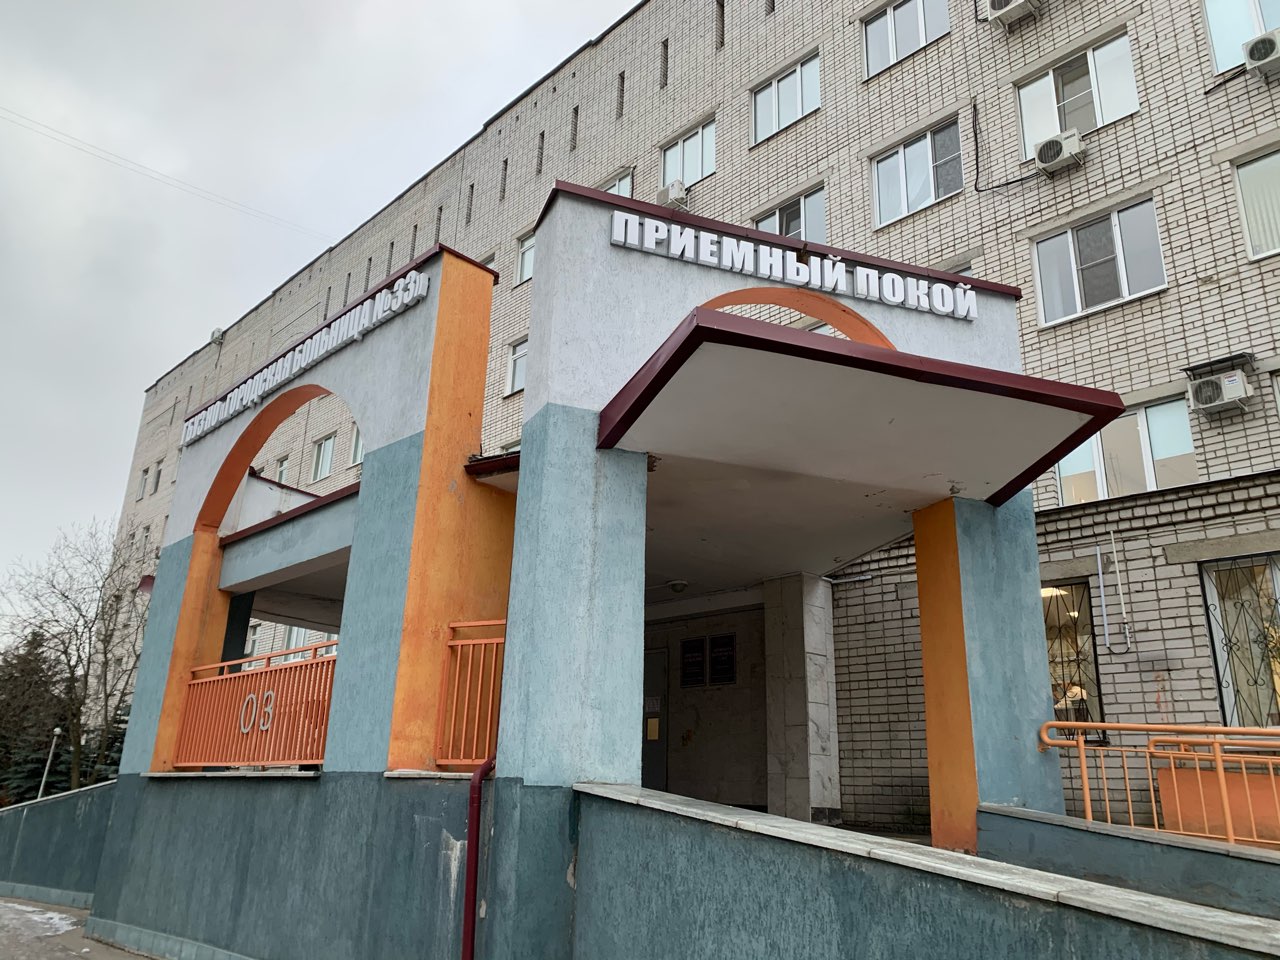 28 медучреждений построят в Нижегородской области по программе модернизации первичного звена здравоохранения - фото 1